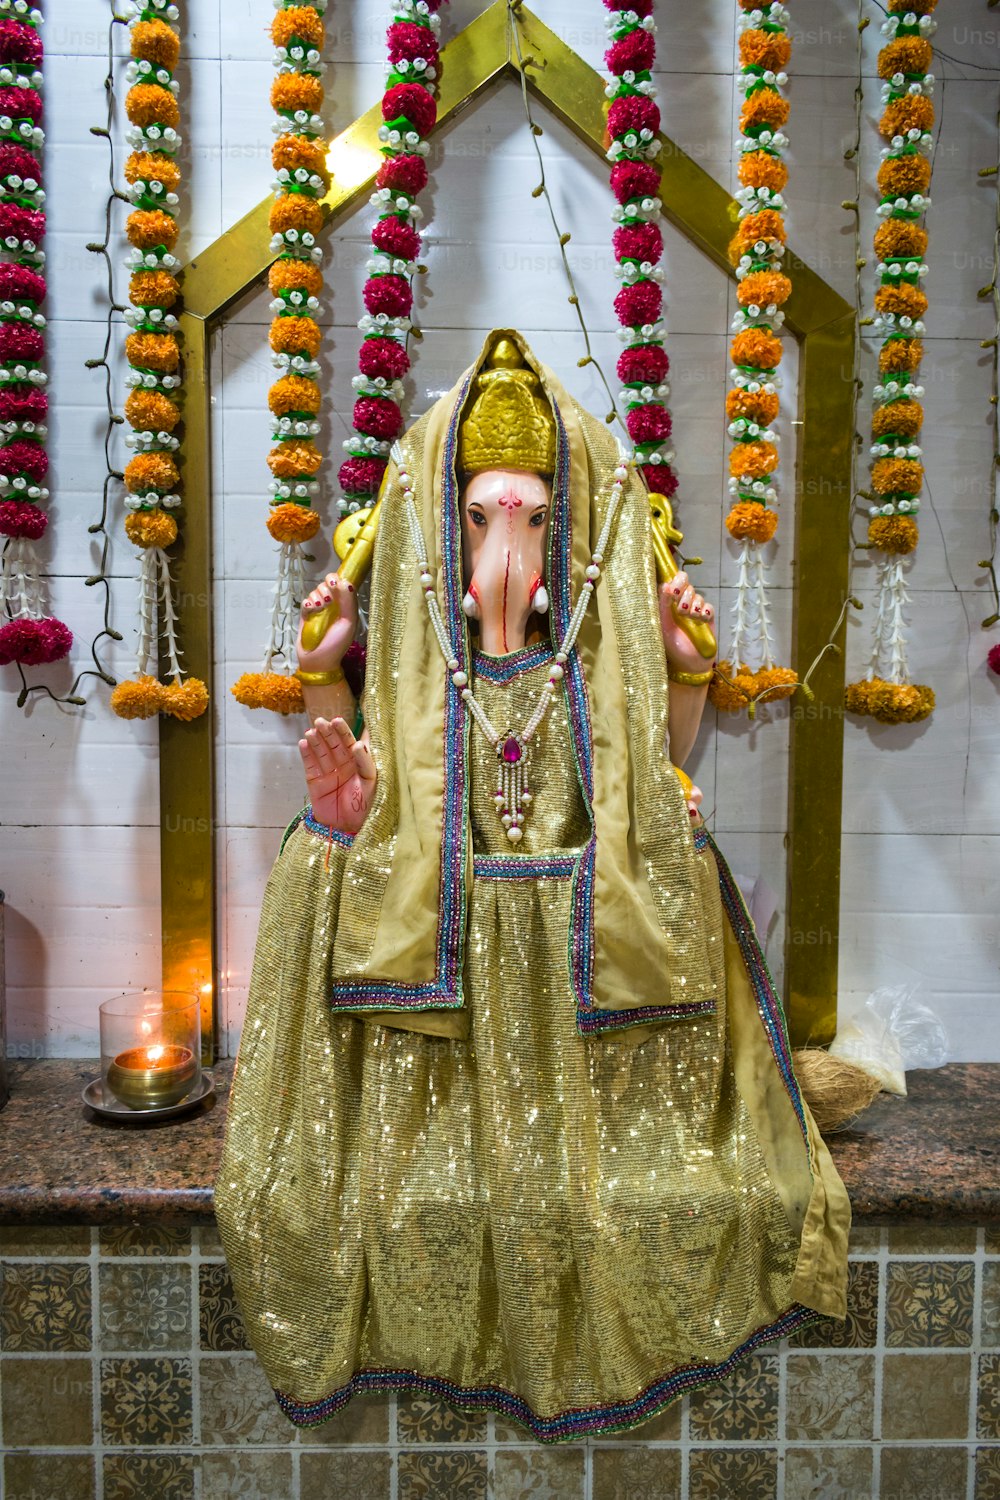 Eine Statue eines Elefanten in goldenem Outfit